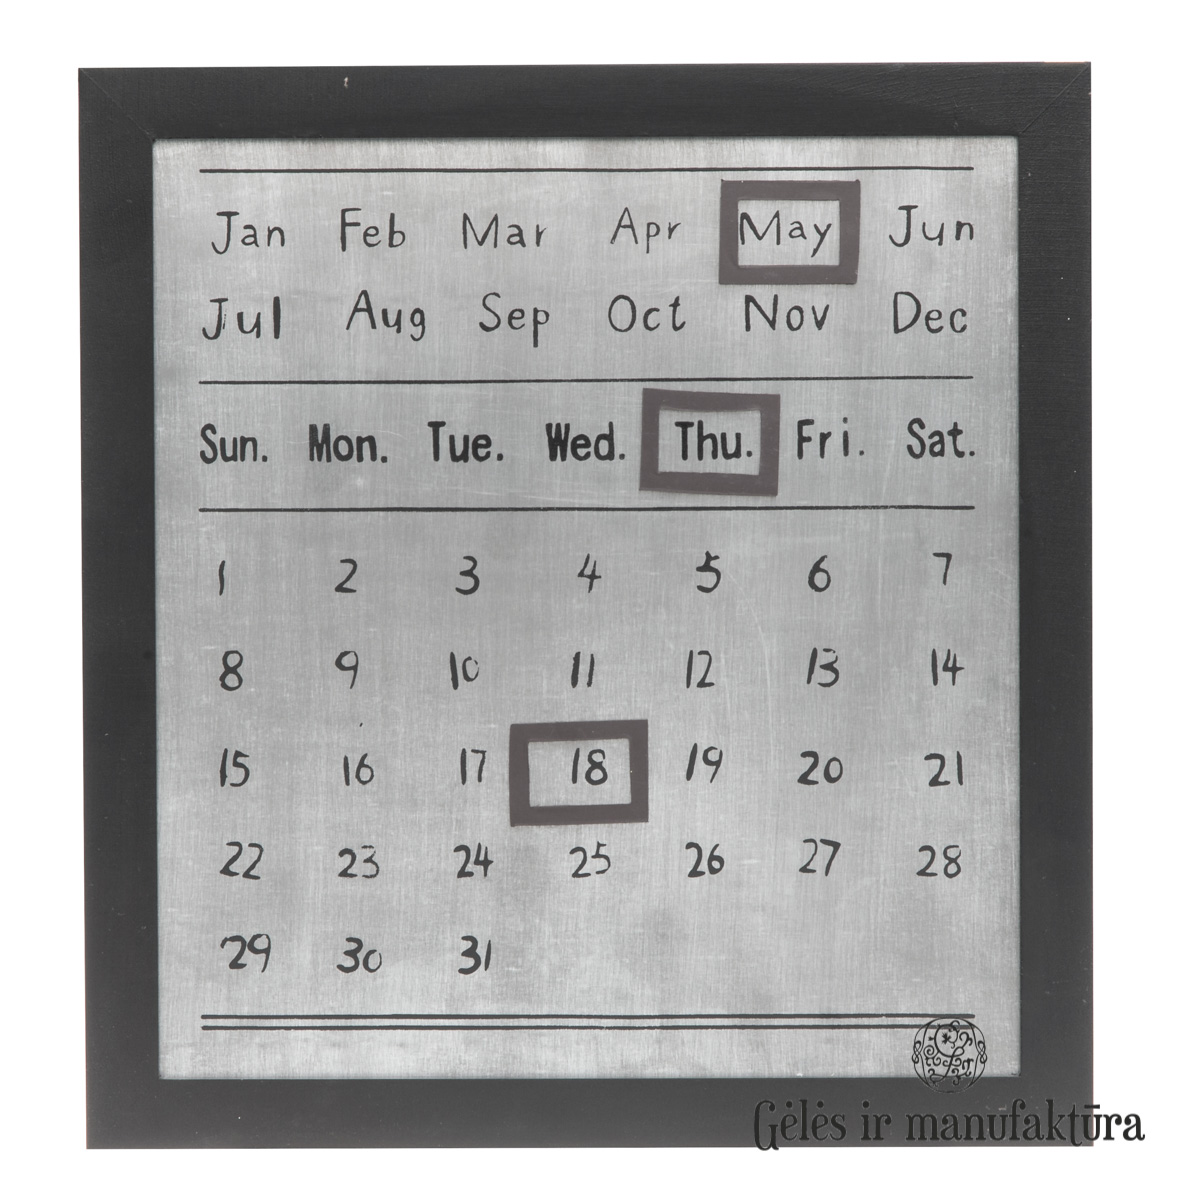 Purple Shrine Occur Metalinis kalendorius su magnetais, su mediniu rėmeliu – Gėlės ir  manufaktūra